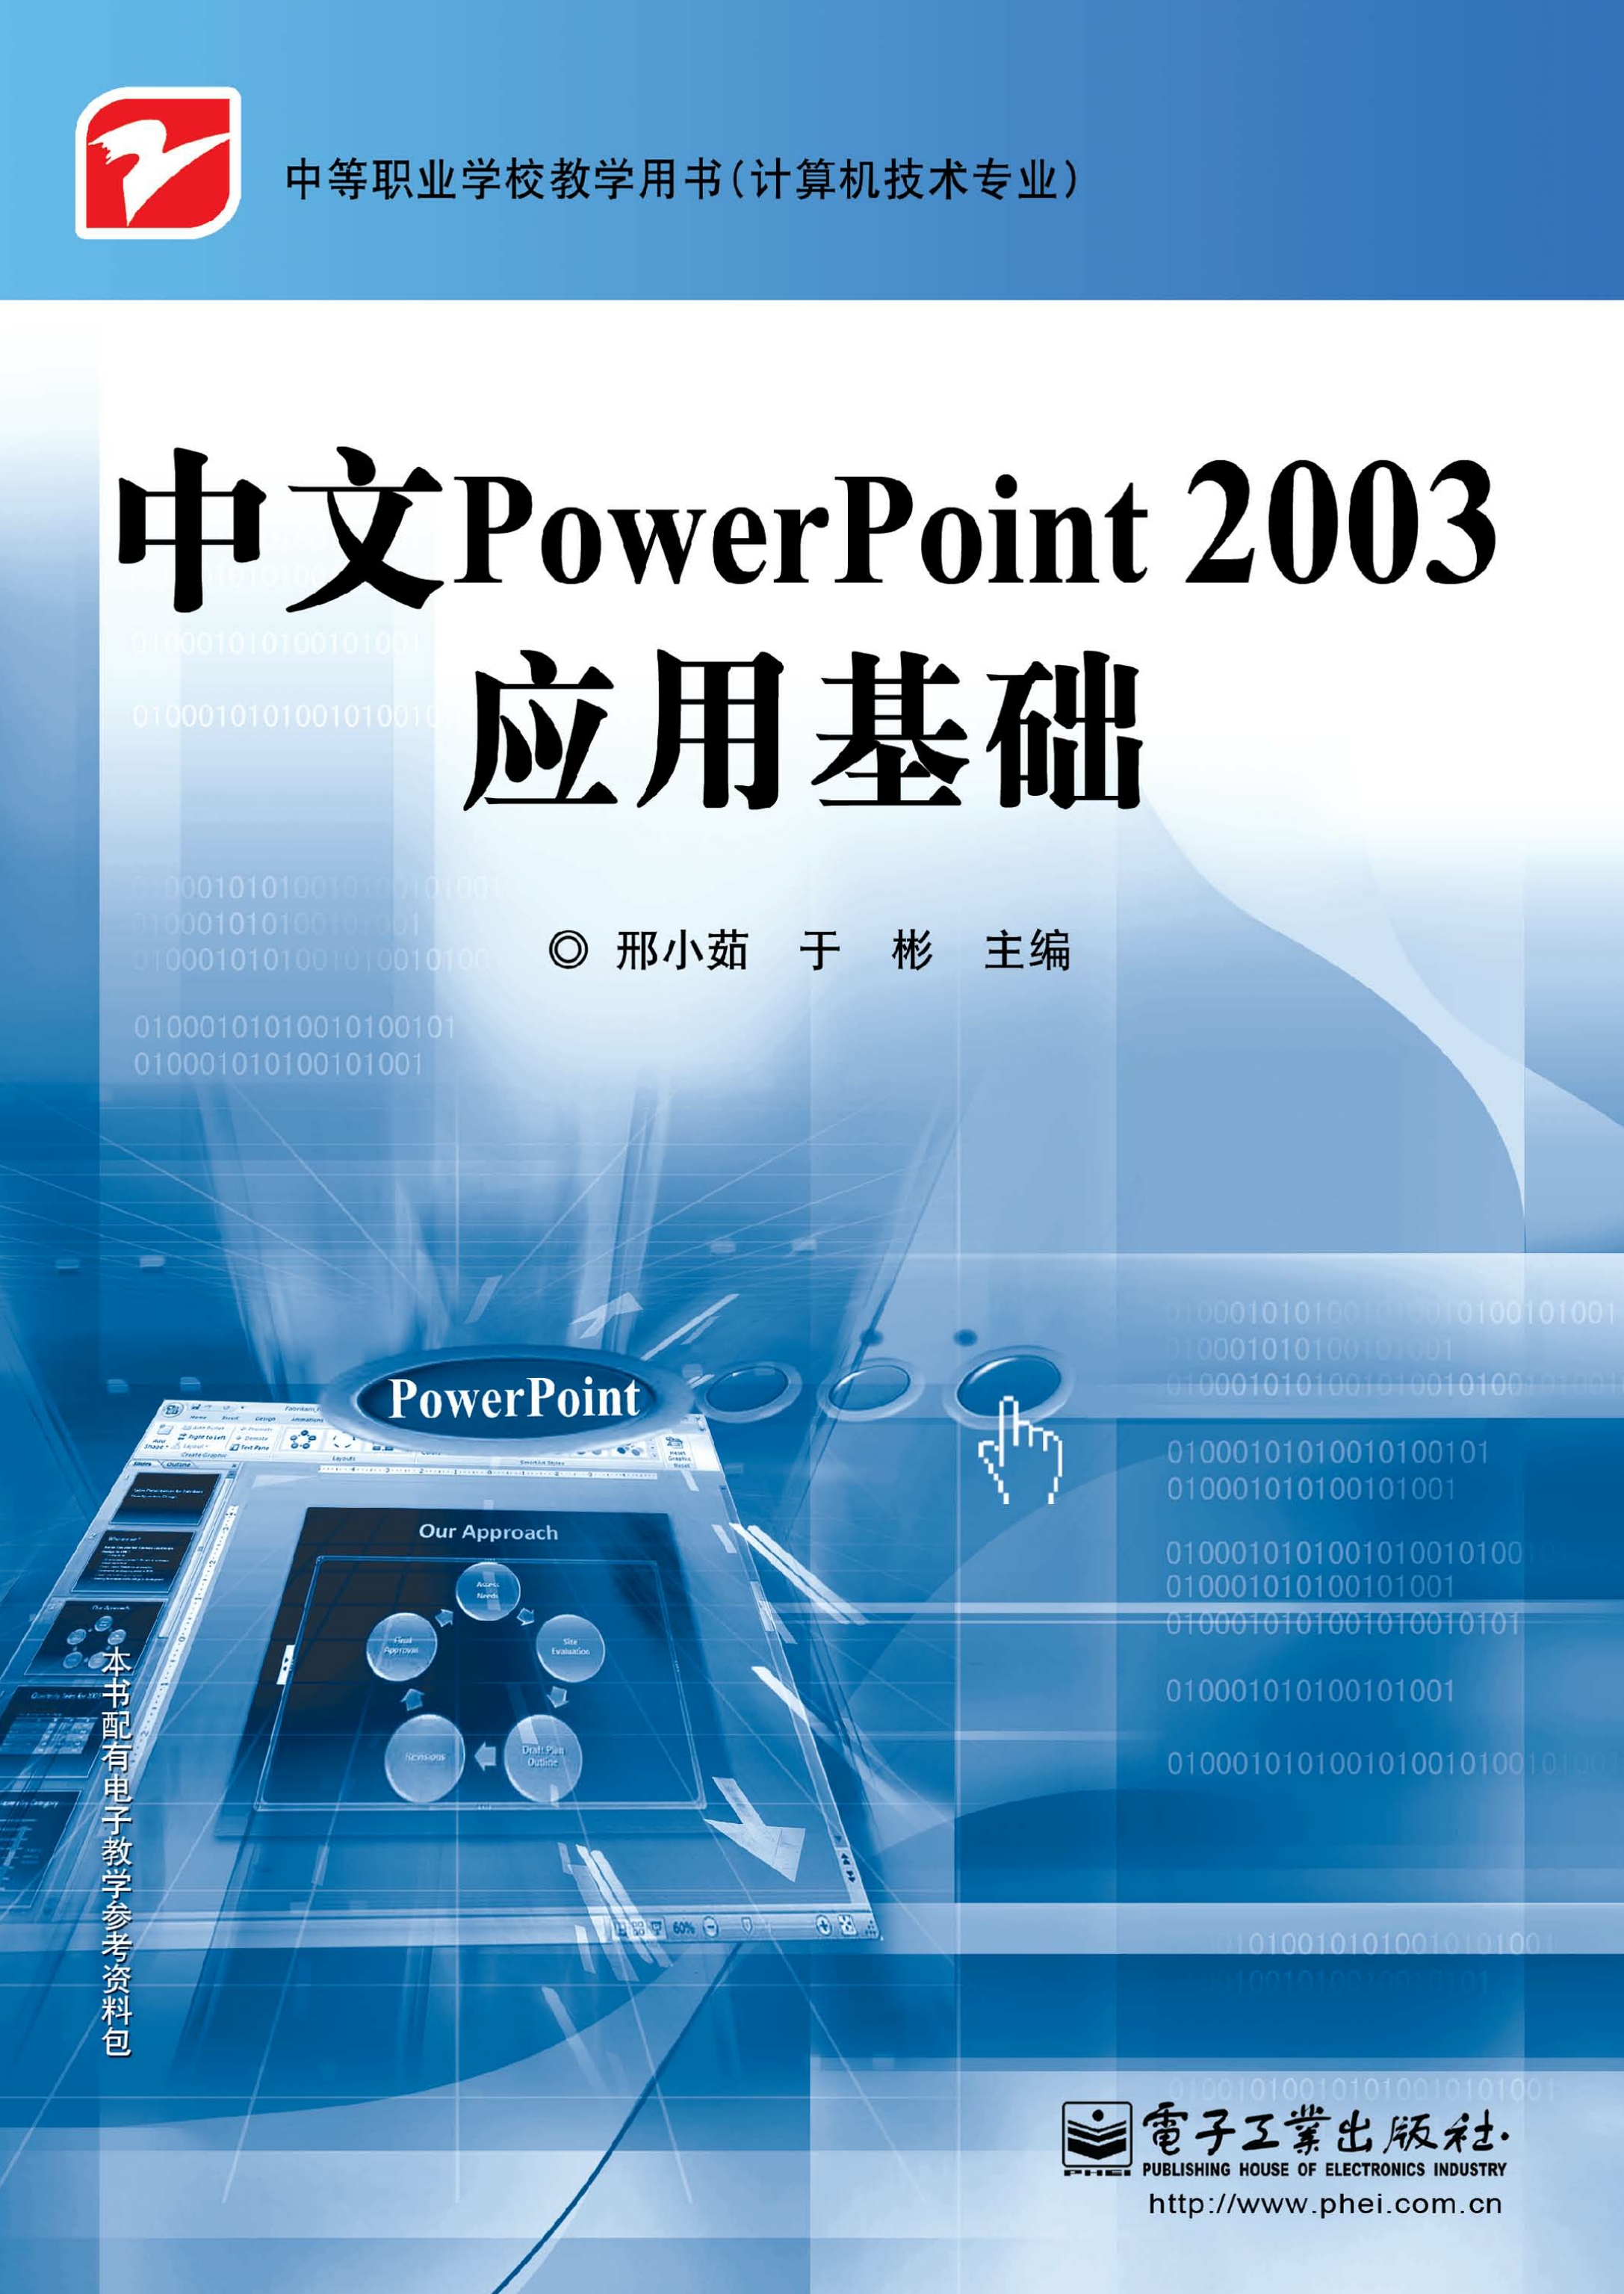 中文PowerPoint 2003应用基础